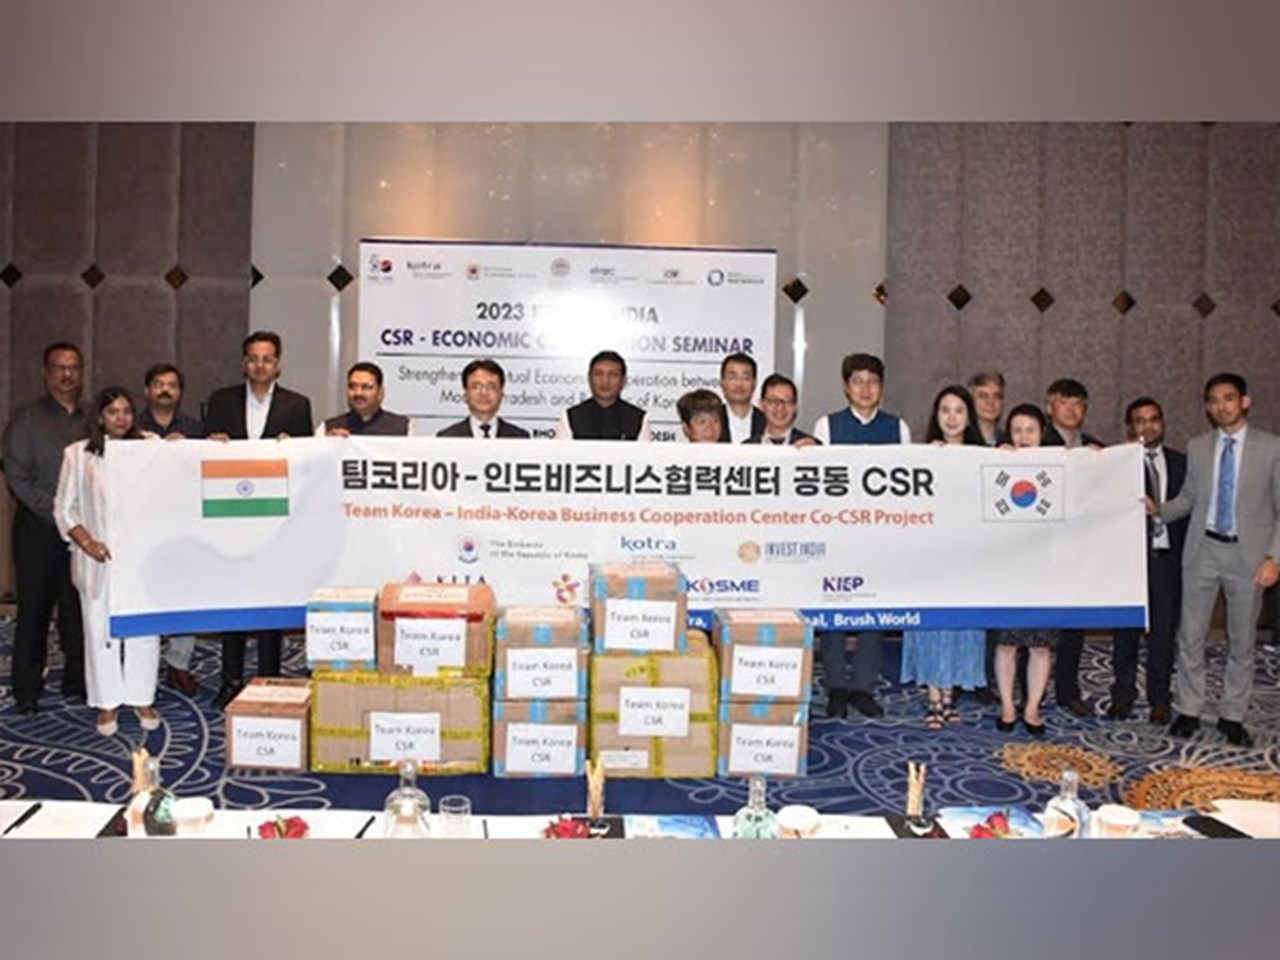 한국은 여러 분야에서 마디아프라데시와 경제 협력을 강화하기 위해 CSR 활동을 추진하고 있습니다.